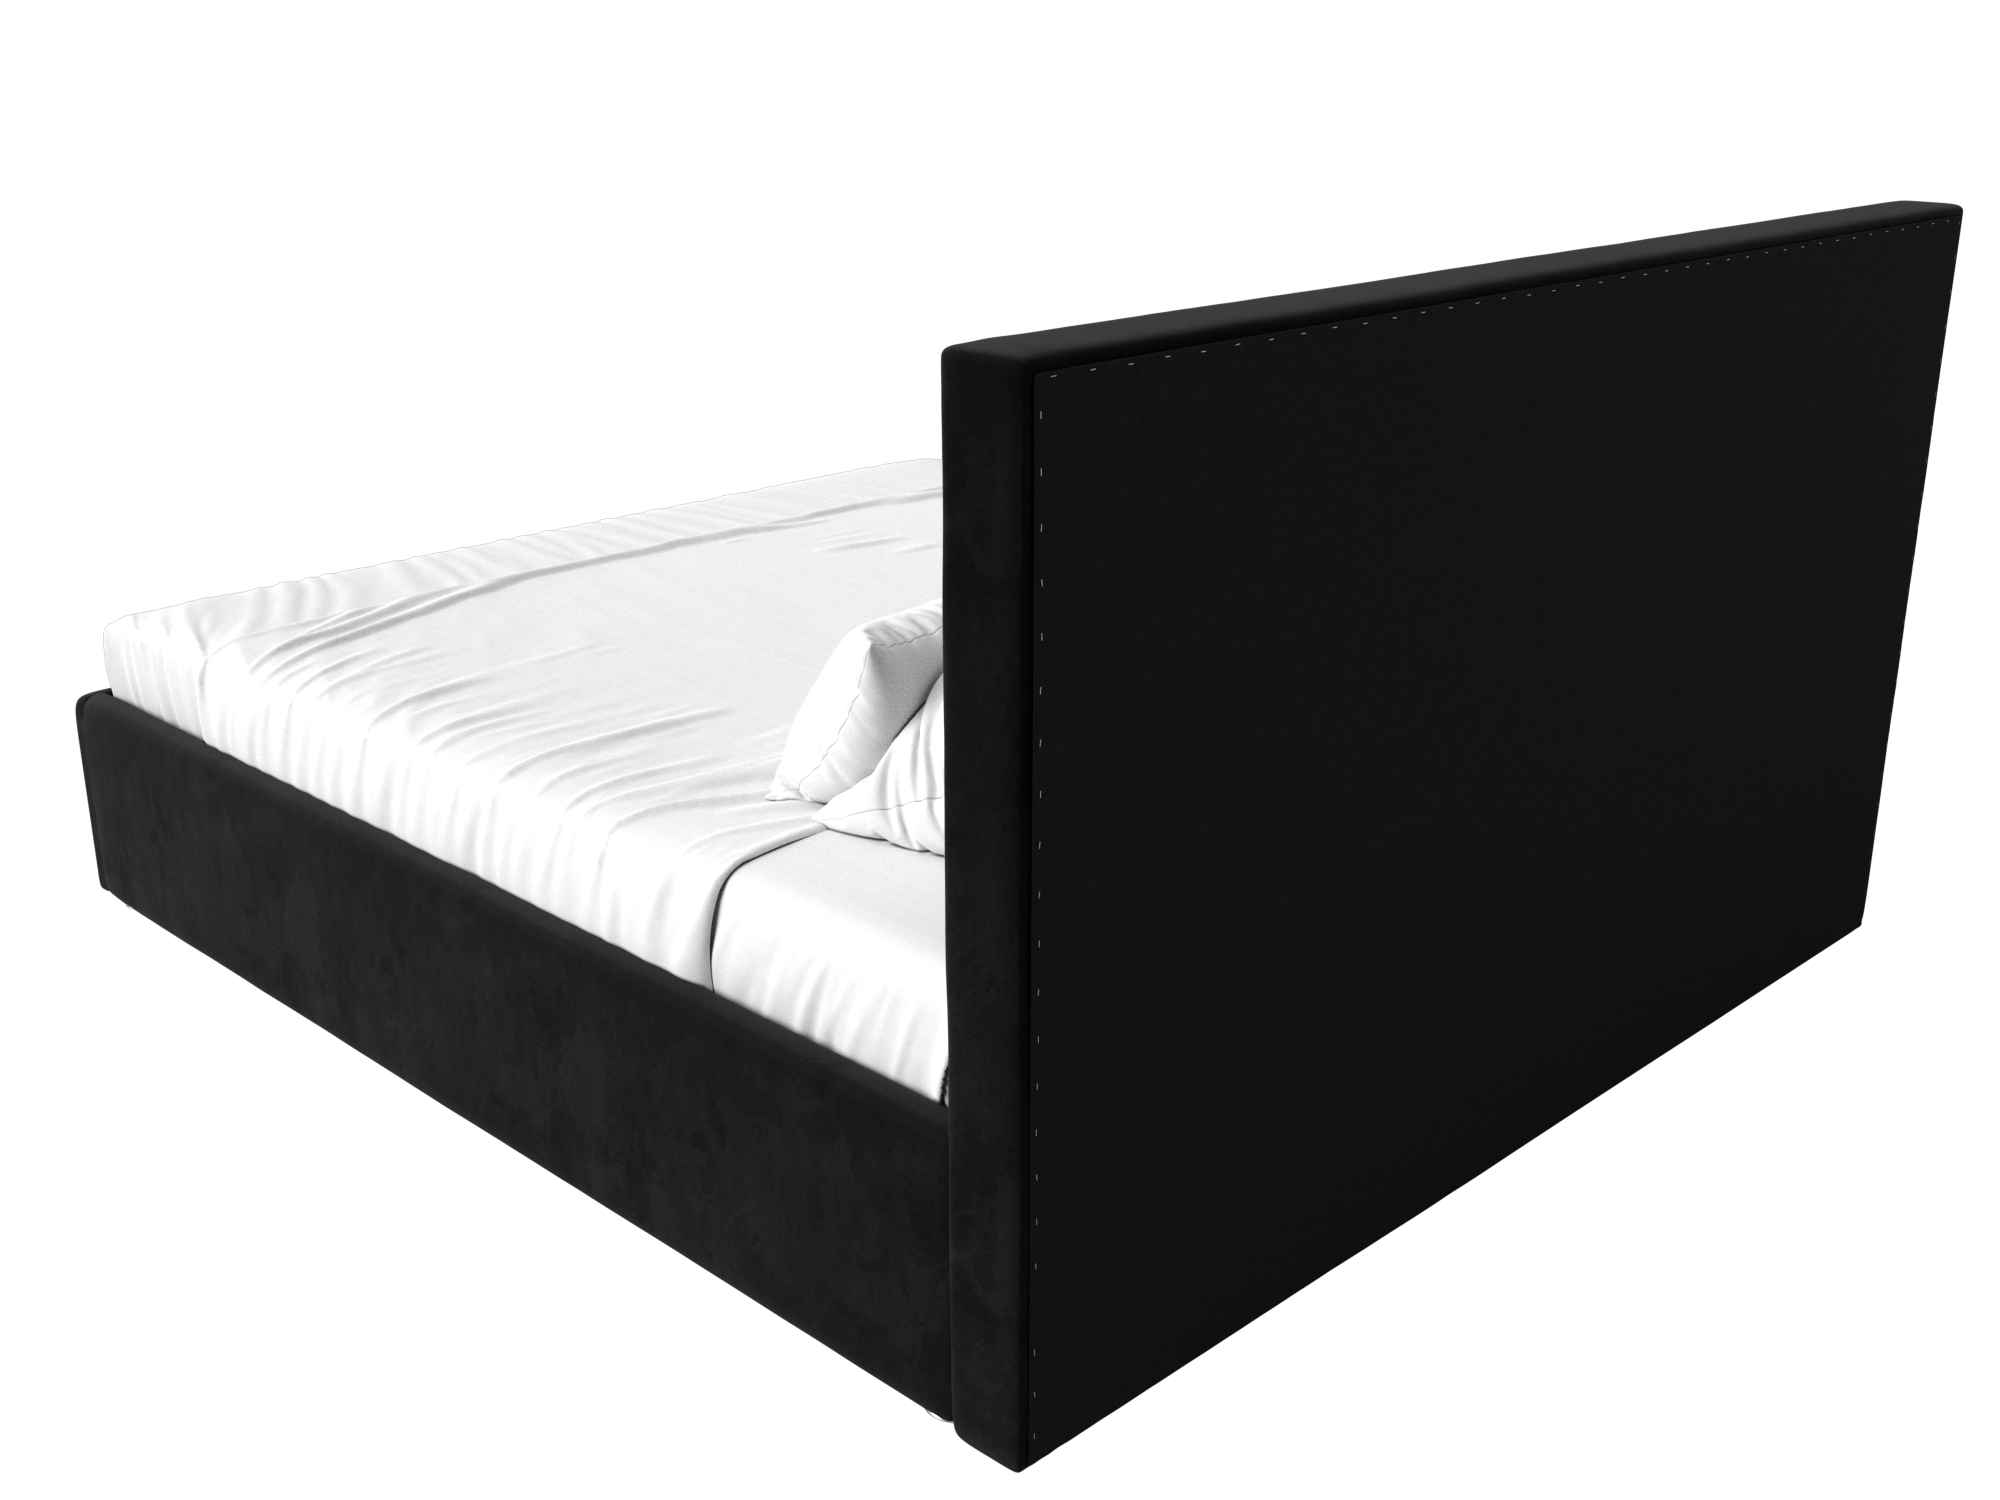 Интерьерная кровать Кариба 160 (Черный)